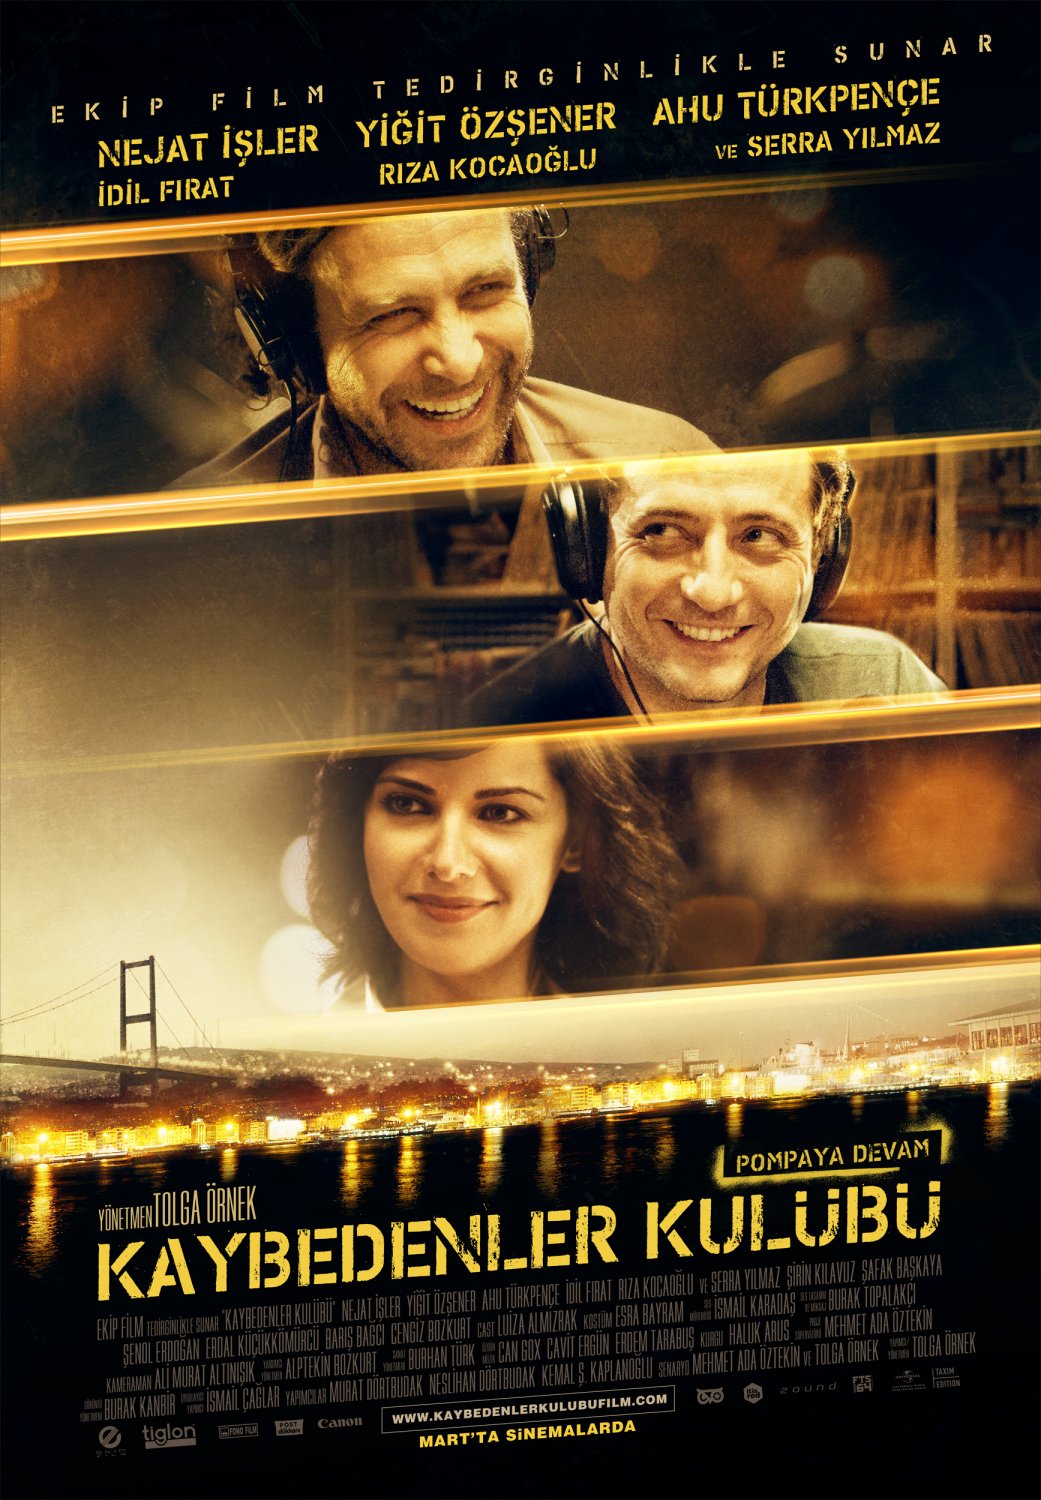 Extra Large Movie Poster Image for Kaybedenler Kulübü (#2 of 2)